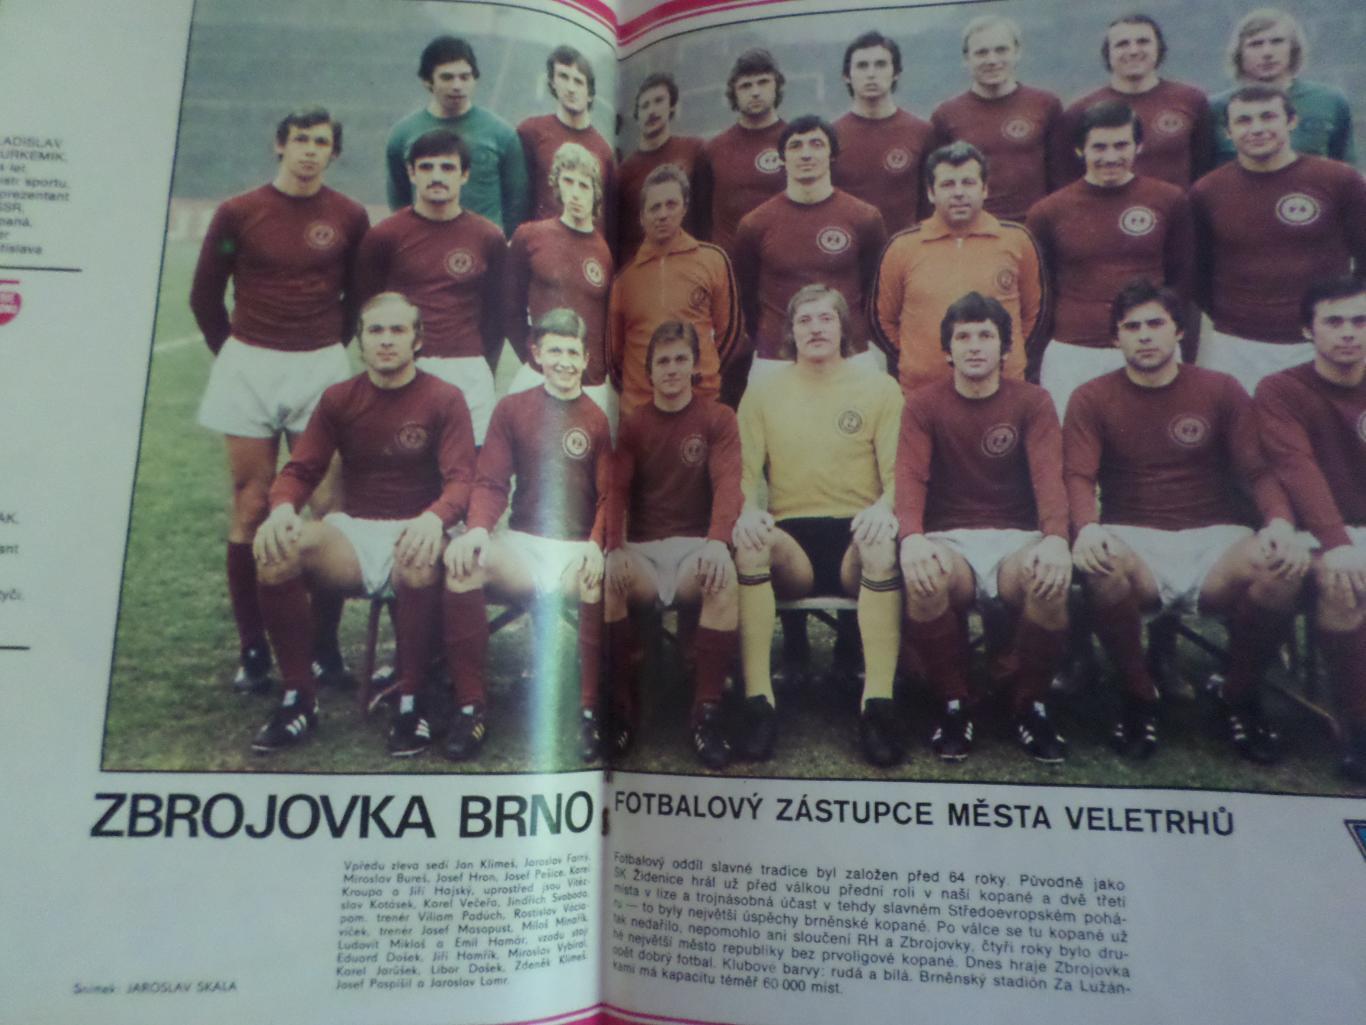 журнал Стадион Чехословакия № 15 1977 г постер Збройовка, Блохин 1